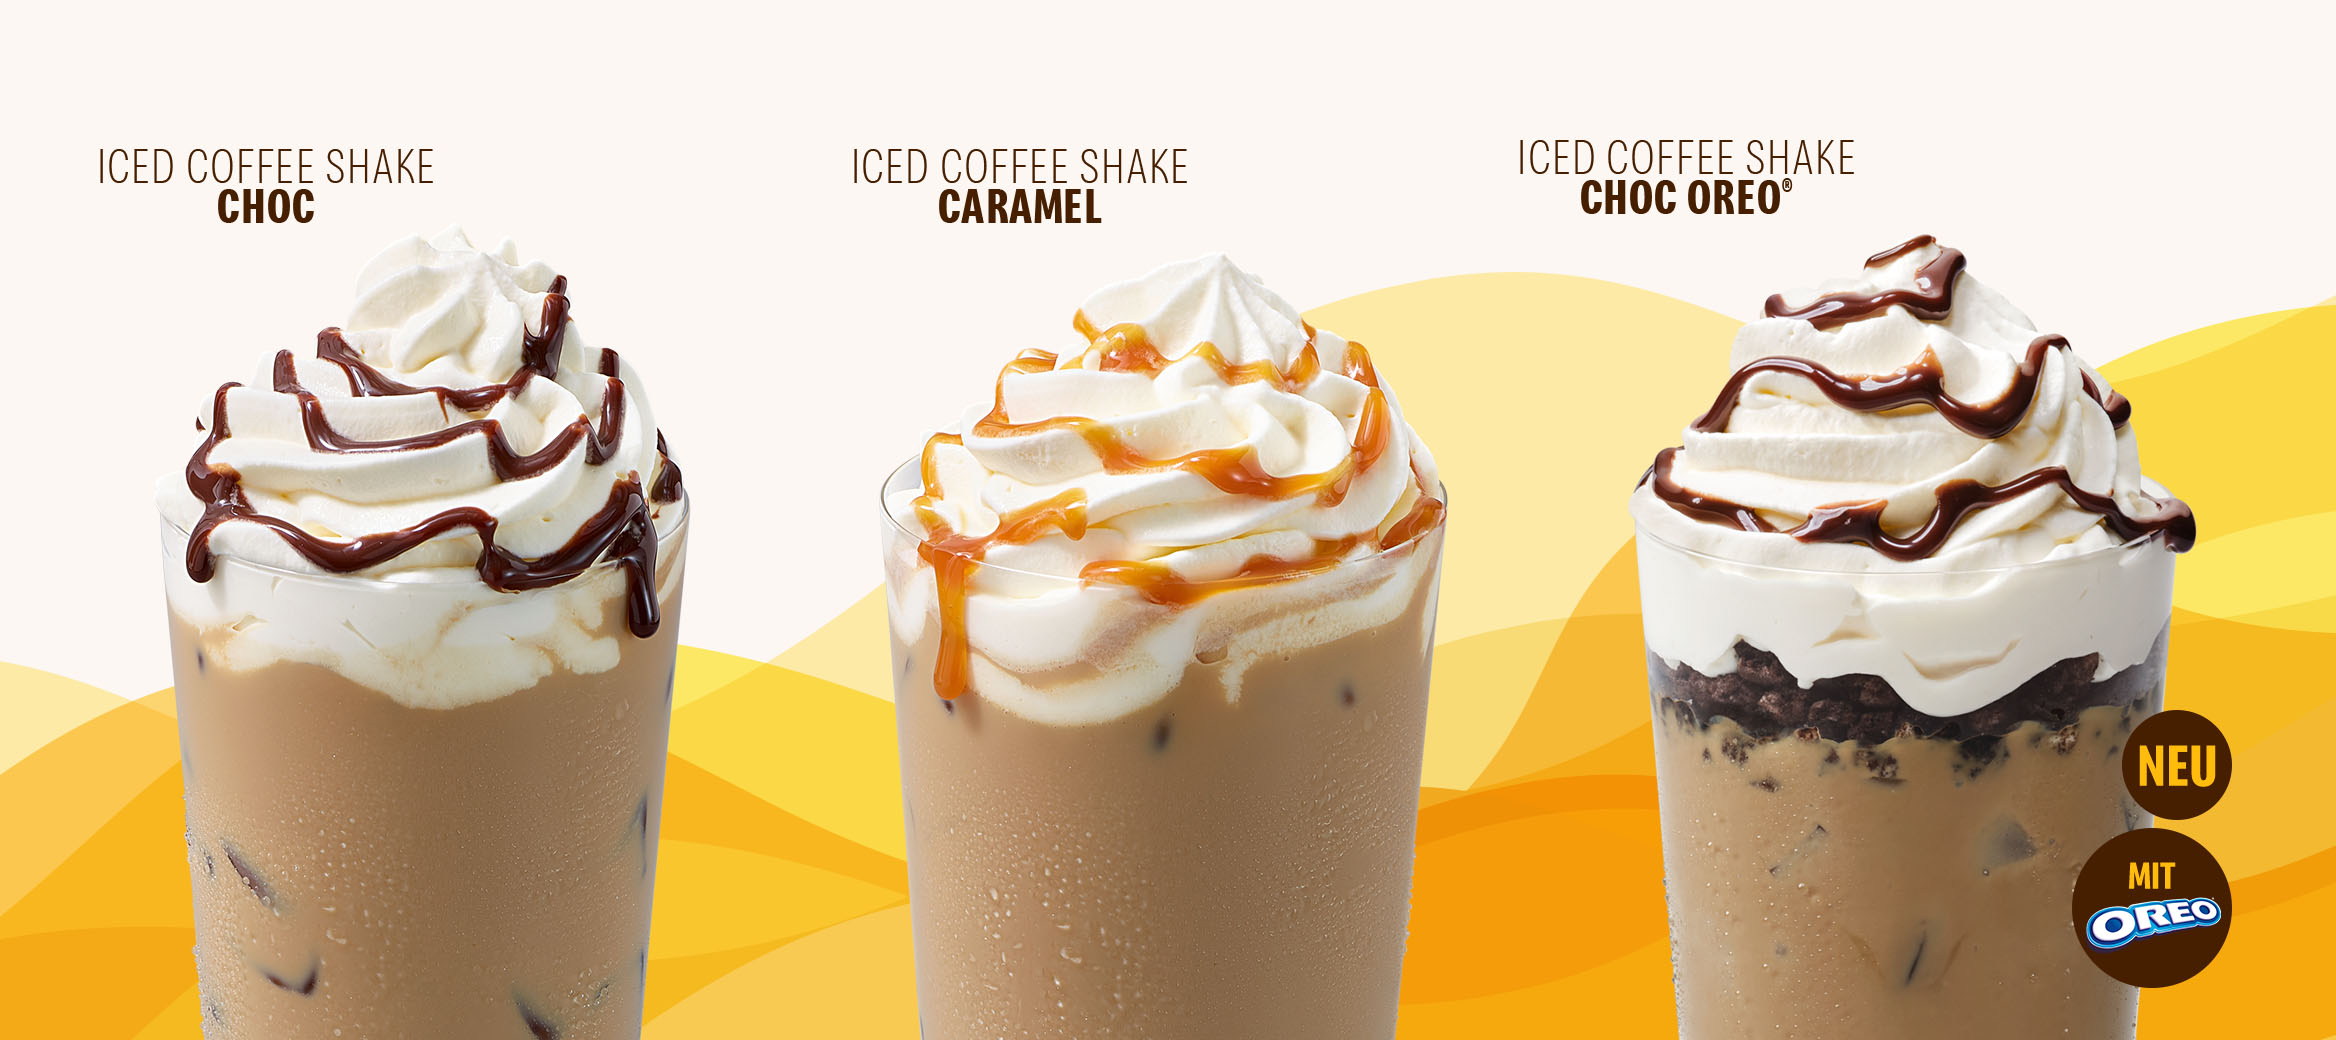 Iced Coffee Shake Choc, Iced Coffee Shake Caramel, Iced Coffee Shake Choc OREO® und Franzbrötchen